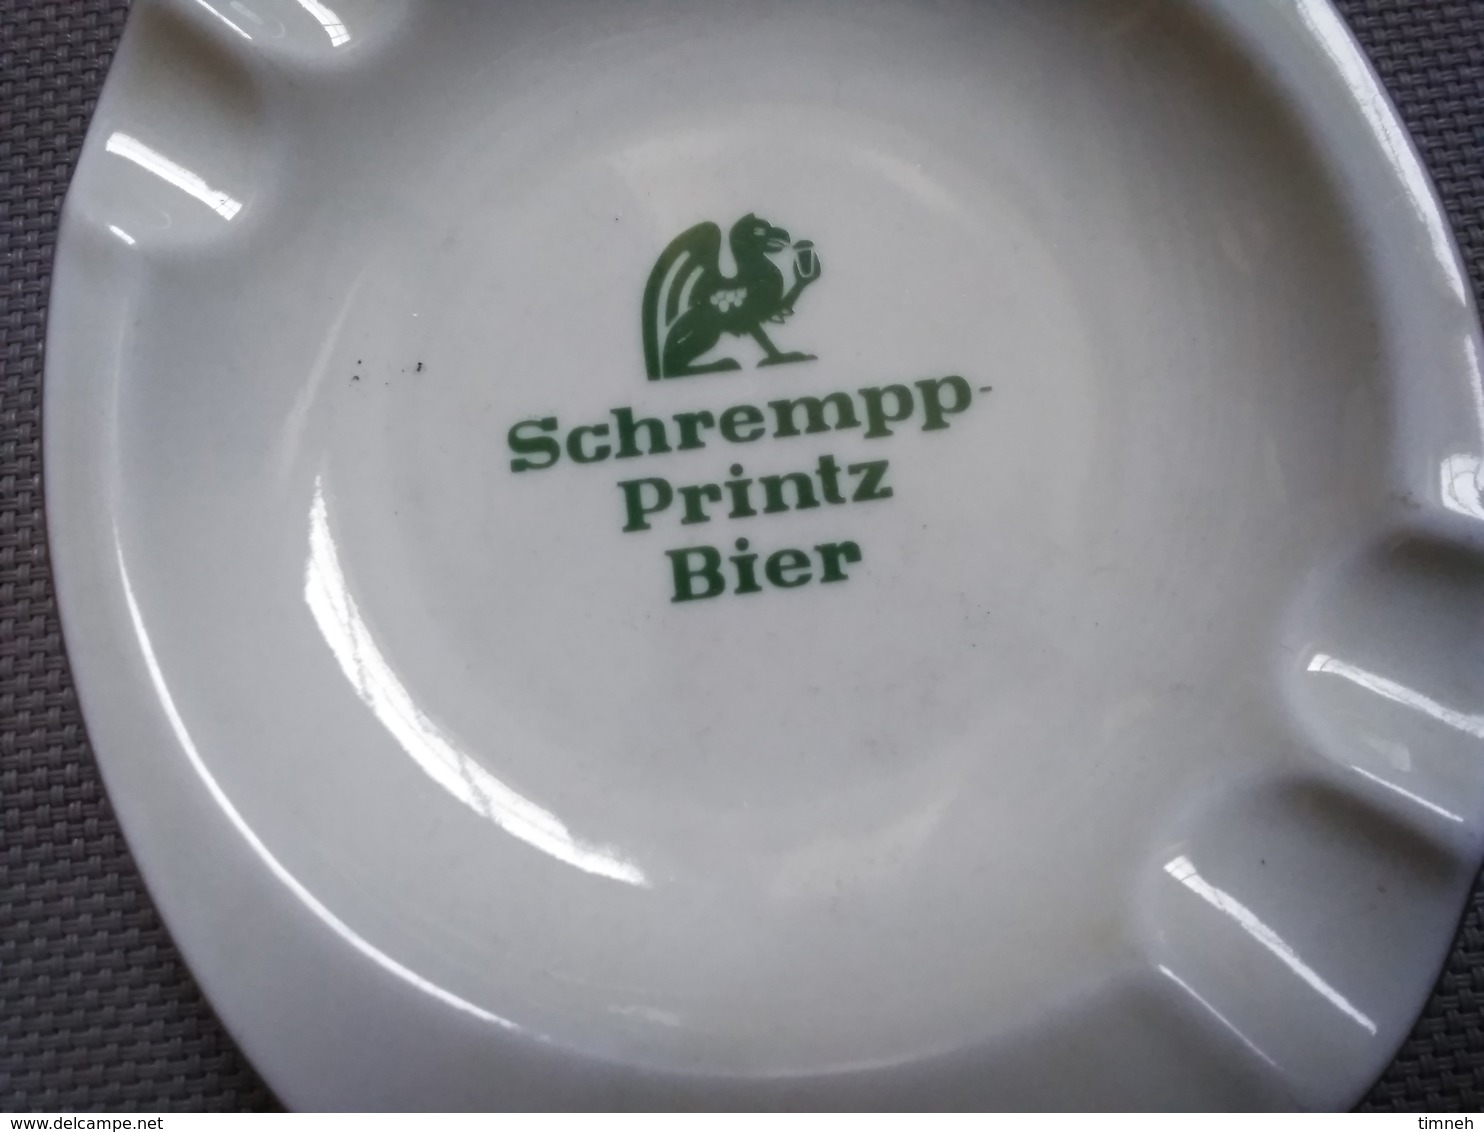 FAÏENCE EMIL SAHM PLANKENHAMMER FLOSS BAVARIA GERMANY - SCHREMPP PRINTZ BIER - CENDRIER 15x12cm - FAÏENCE - Ashtrays